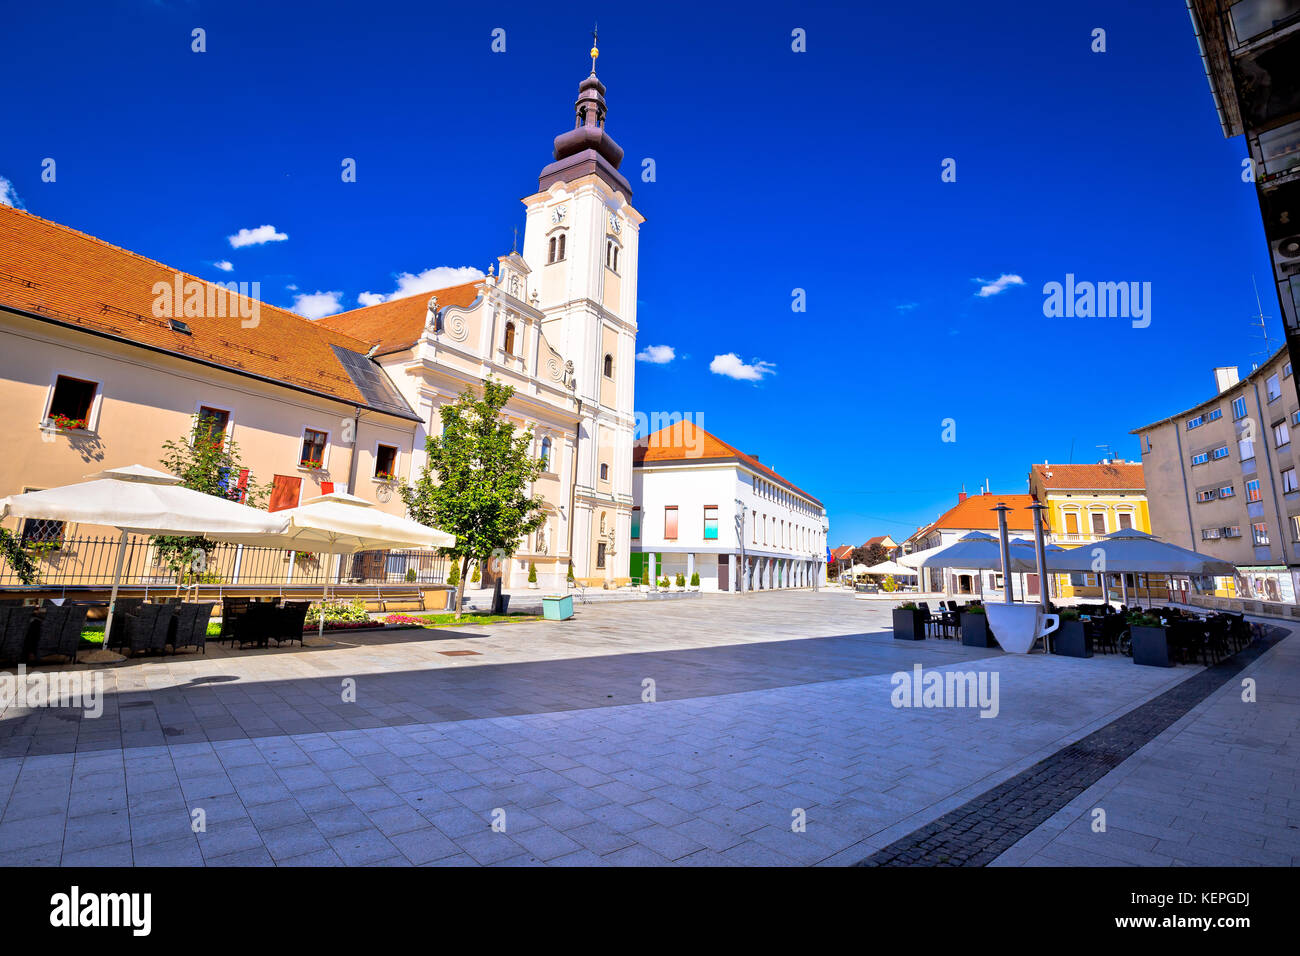 Stadt Cakovec Hauptplatz und Blick auf die Kirche, medjimurje Region von Kroatien Stockfoto